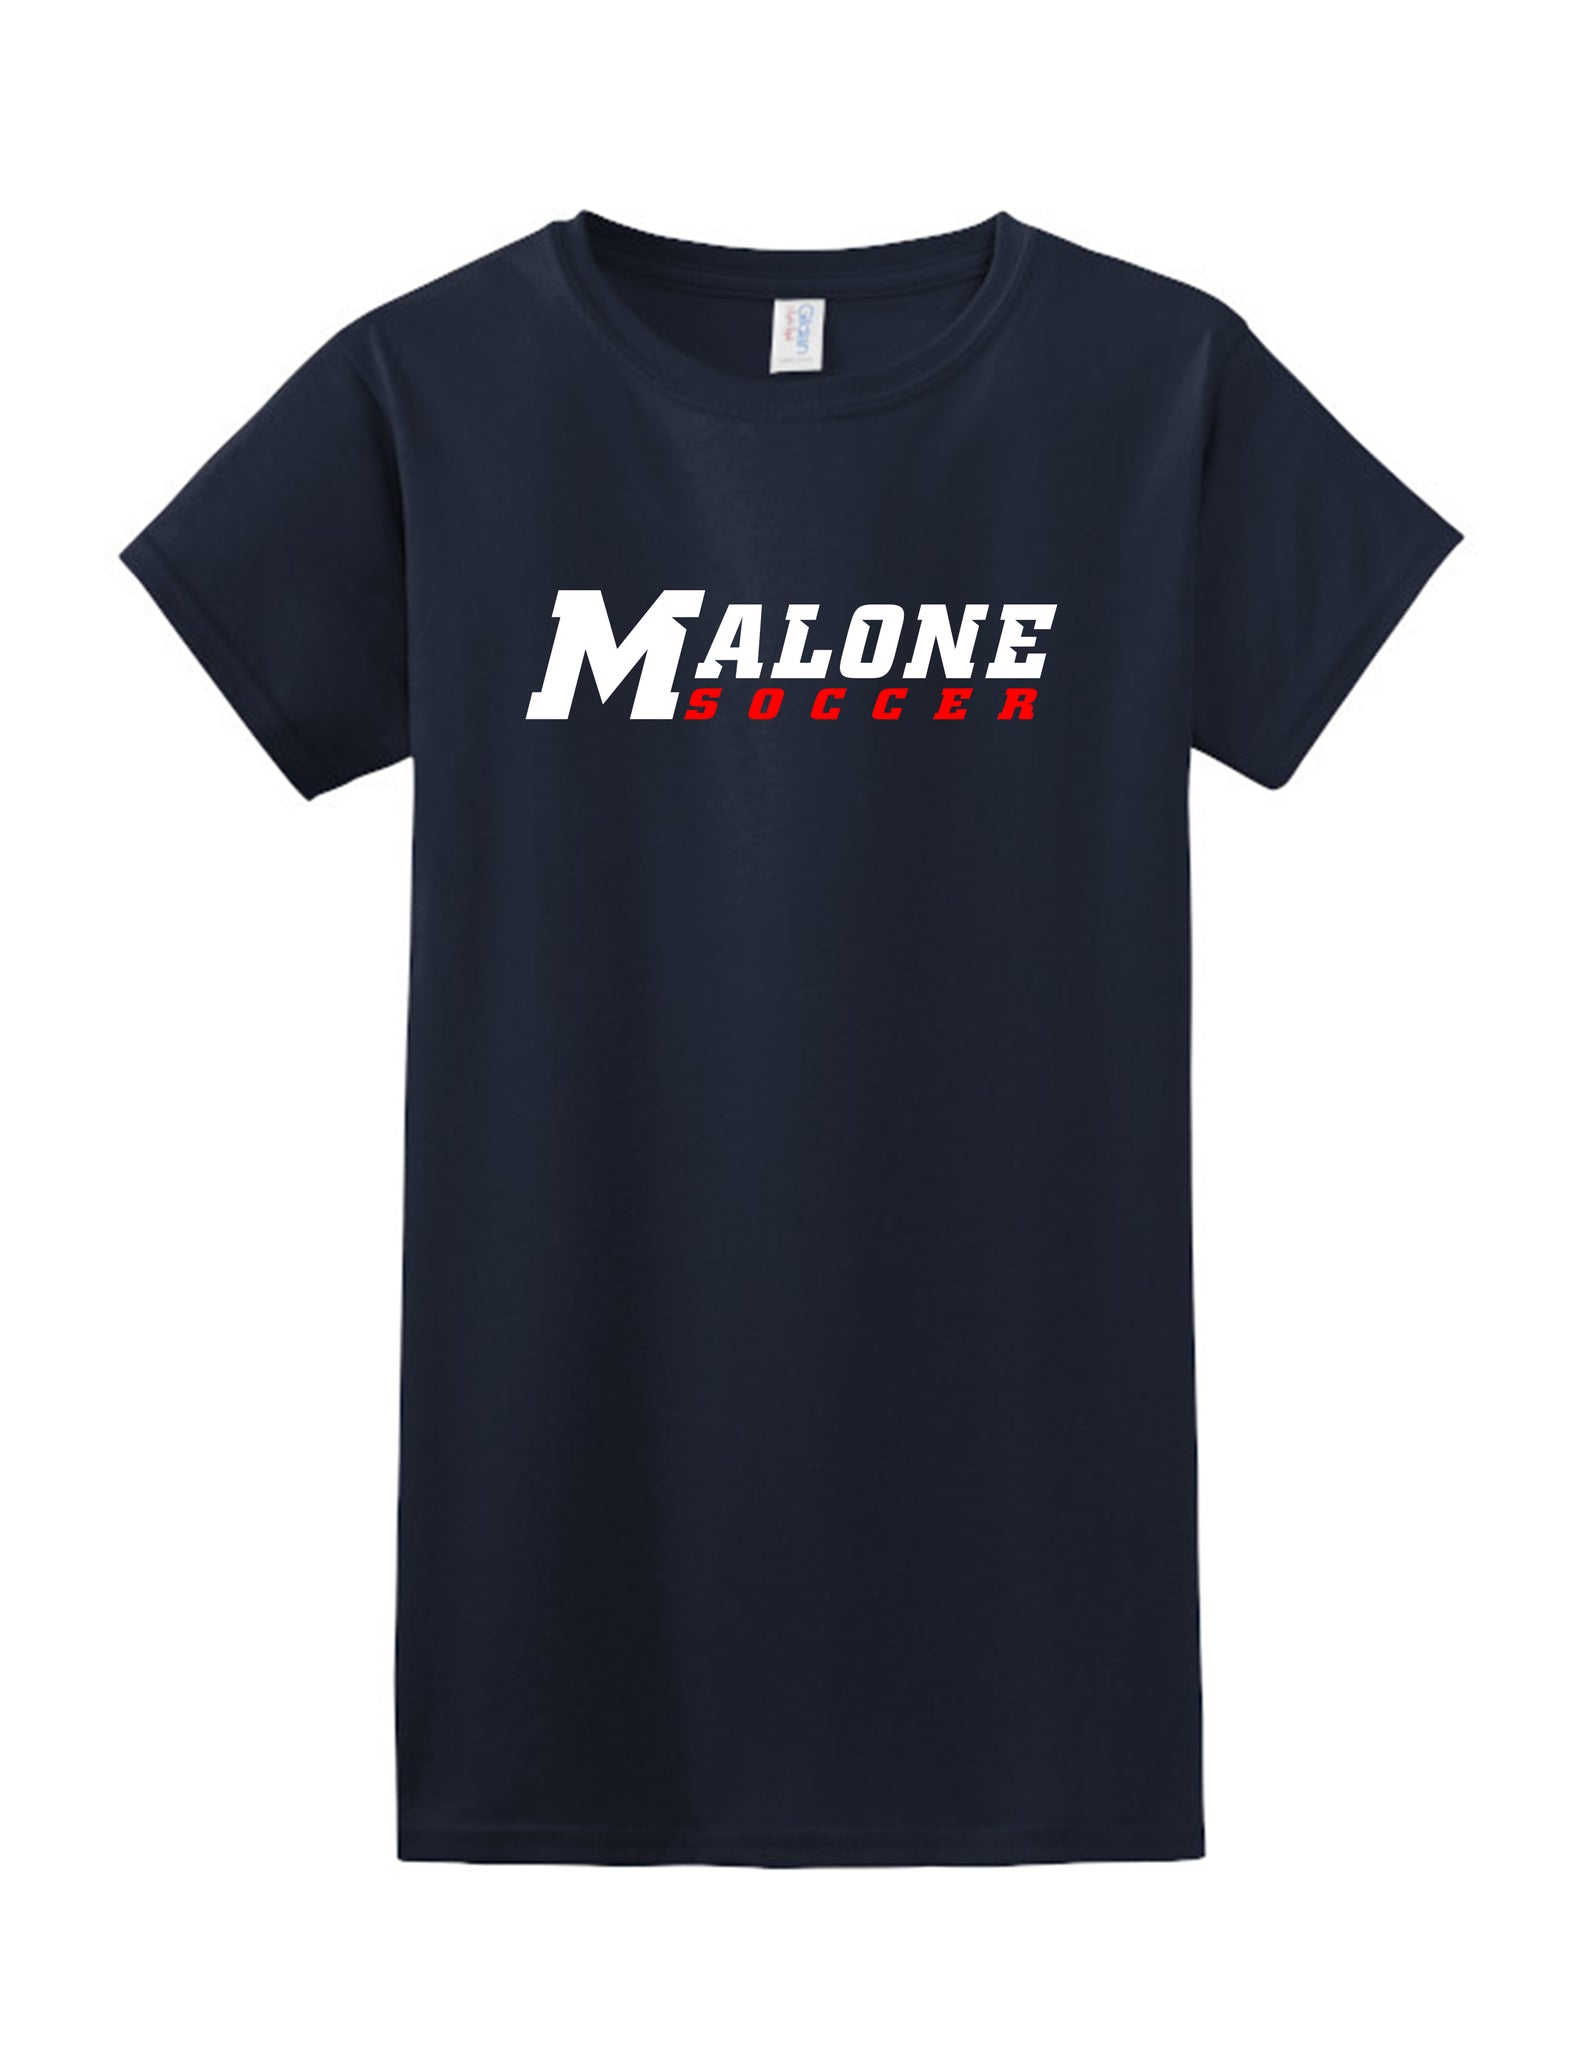 Malone Men's Soccer Women's T-Shirt